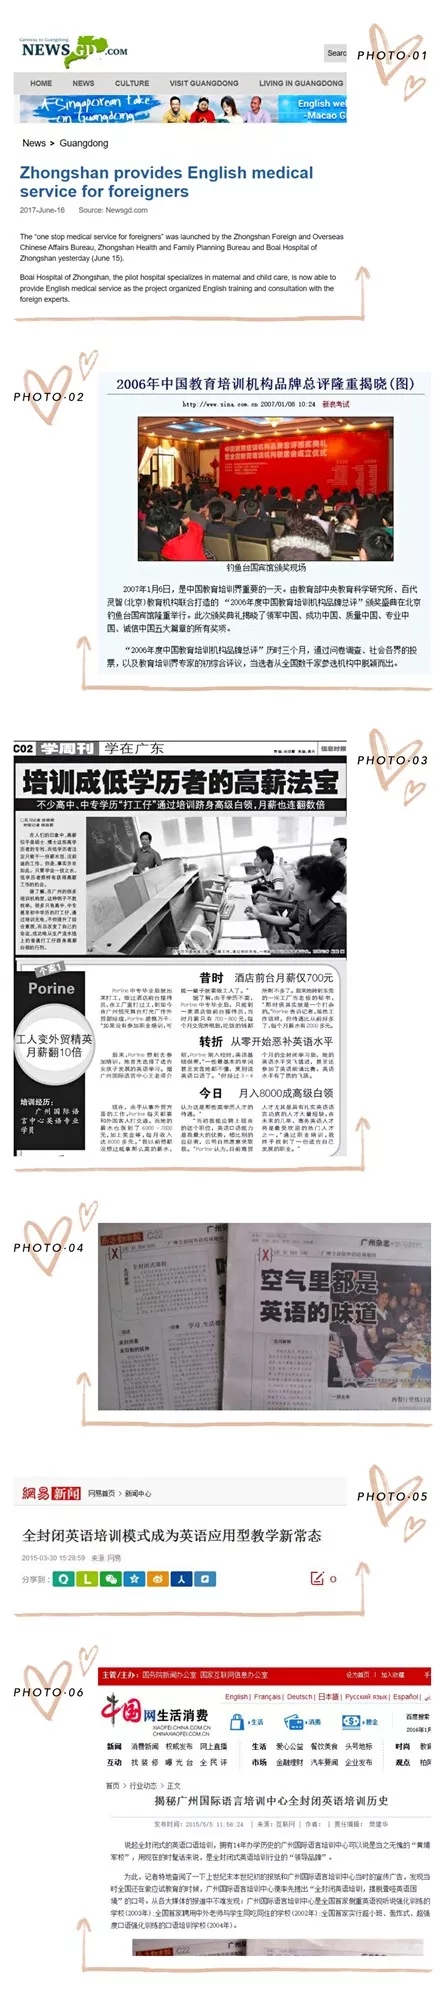 ILC广州国际语言培训中心全封闭式英语培训成果媒体采访报道文章